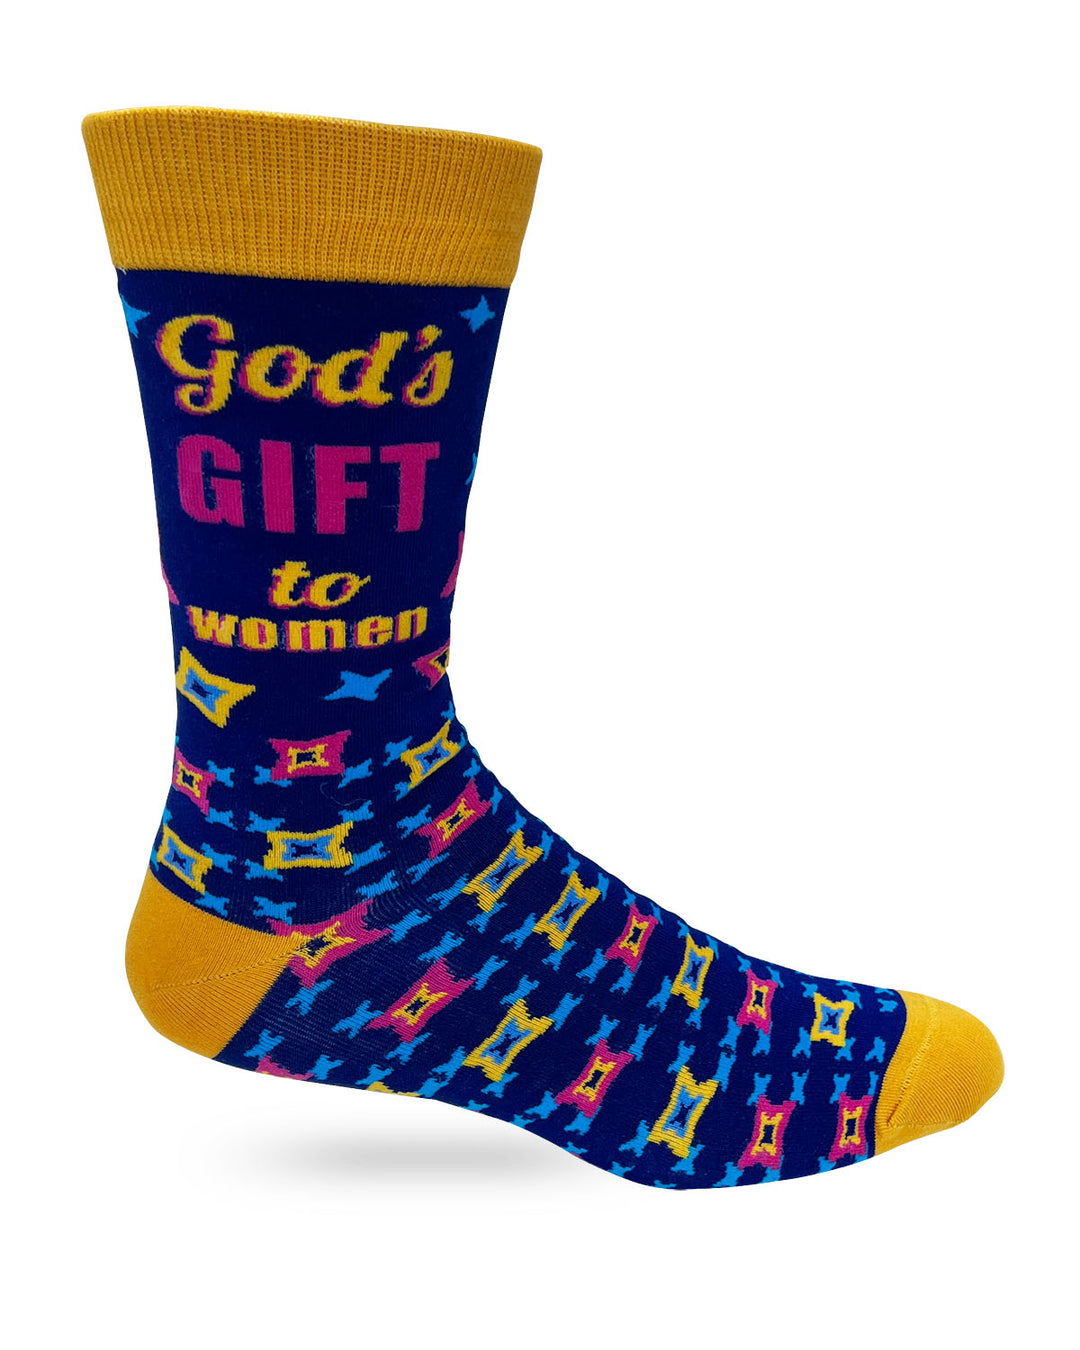 God’s Gift to Women Men's Novelty Crew Socks